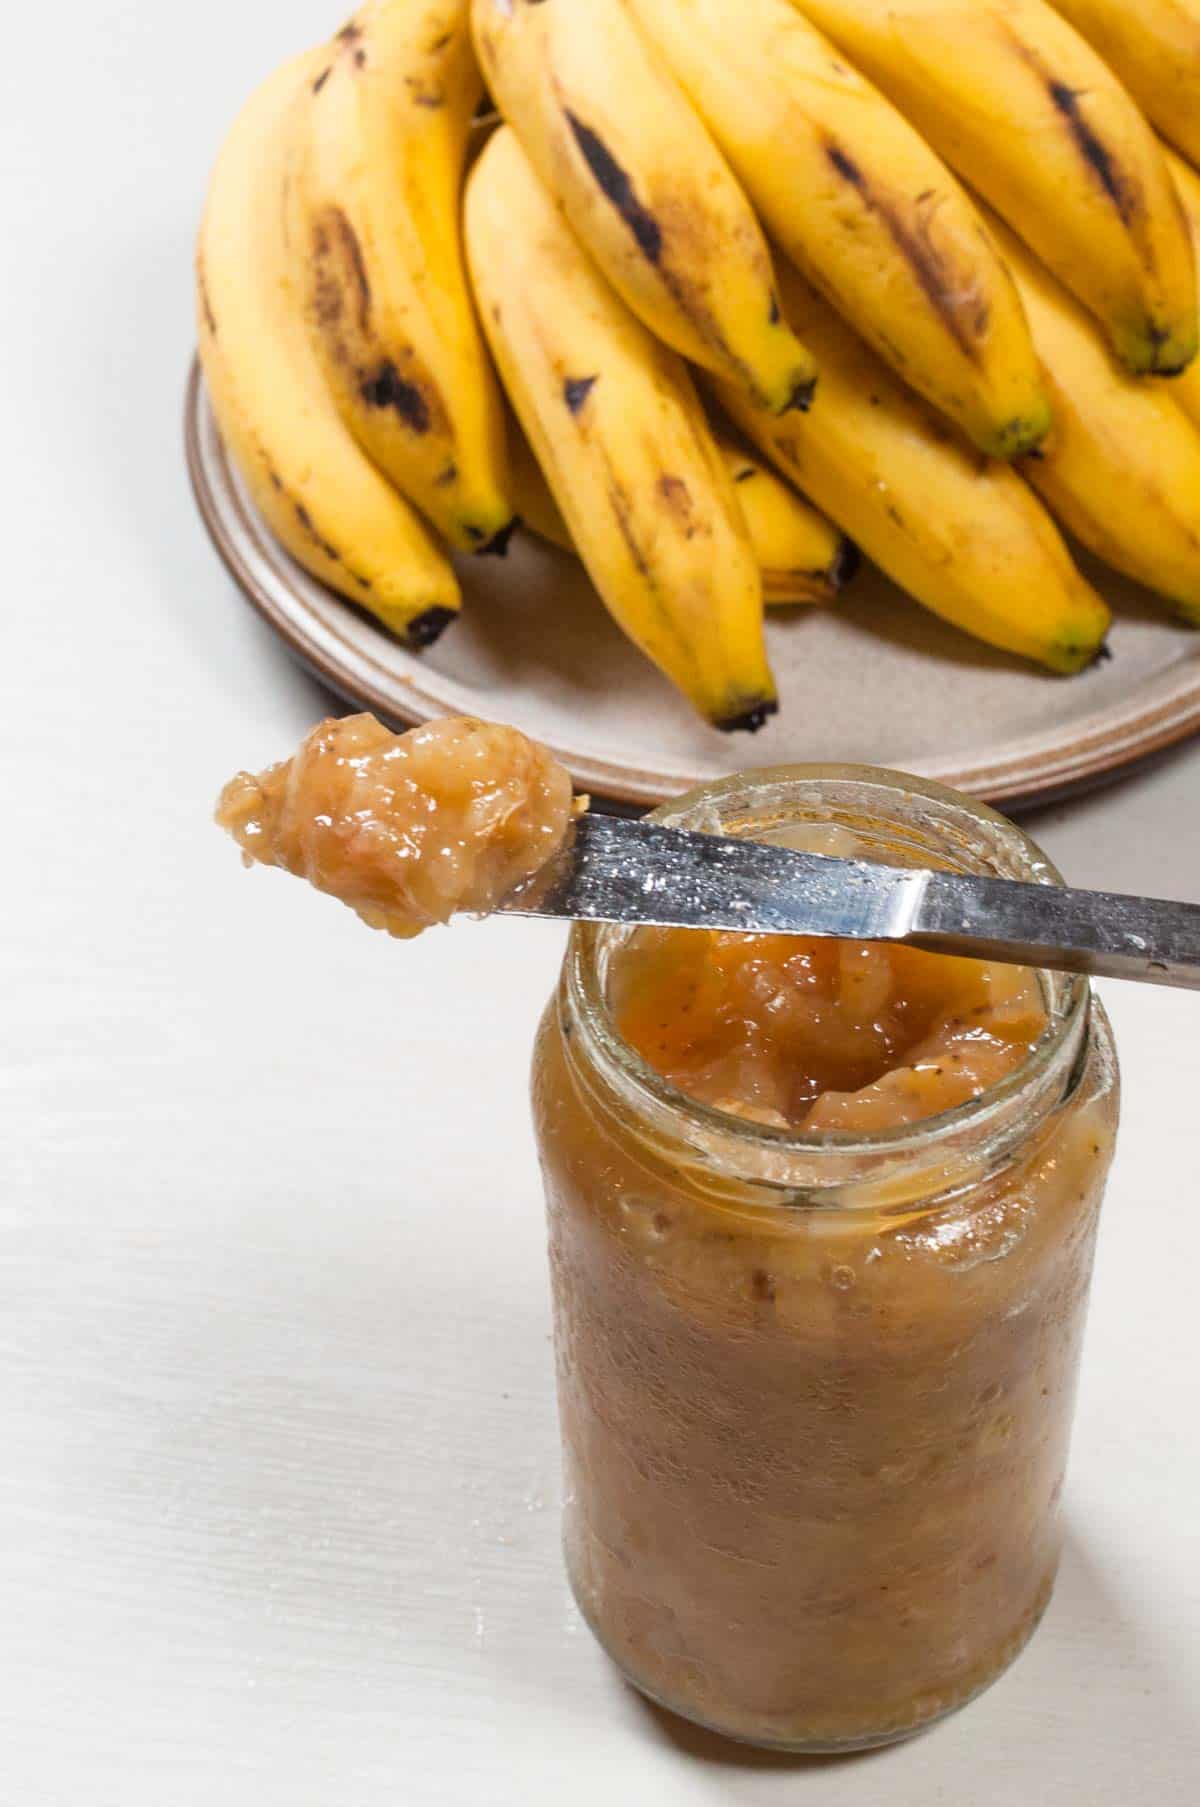 Banana on the breakfast knife kept on the jam jar. 